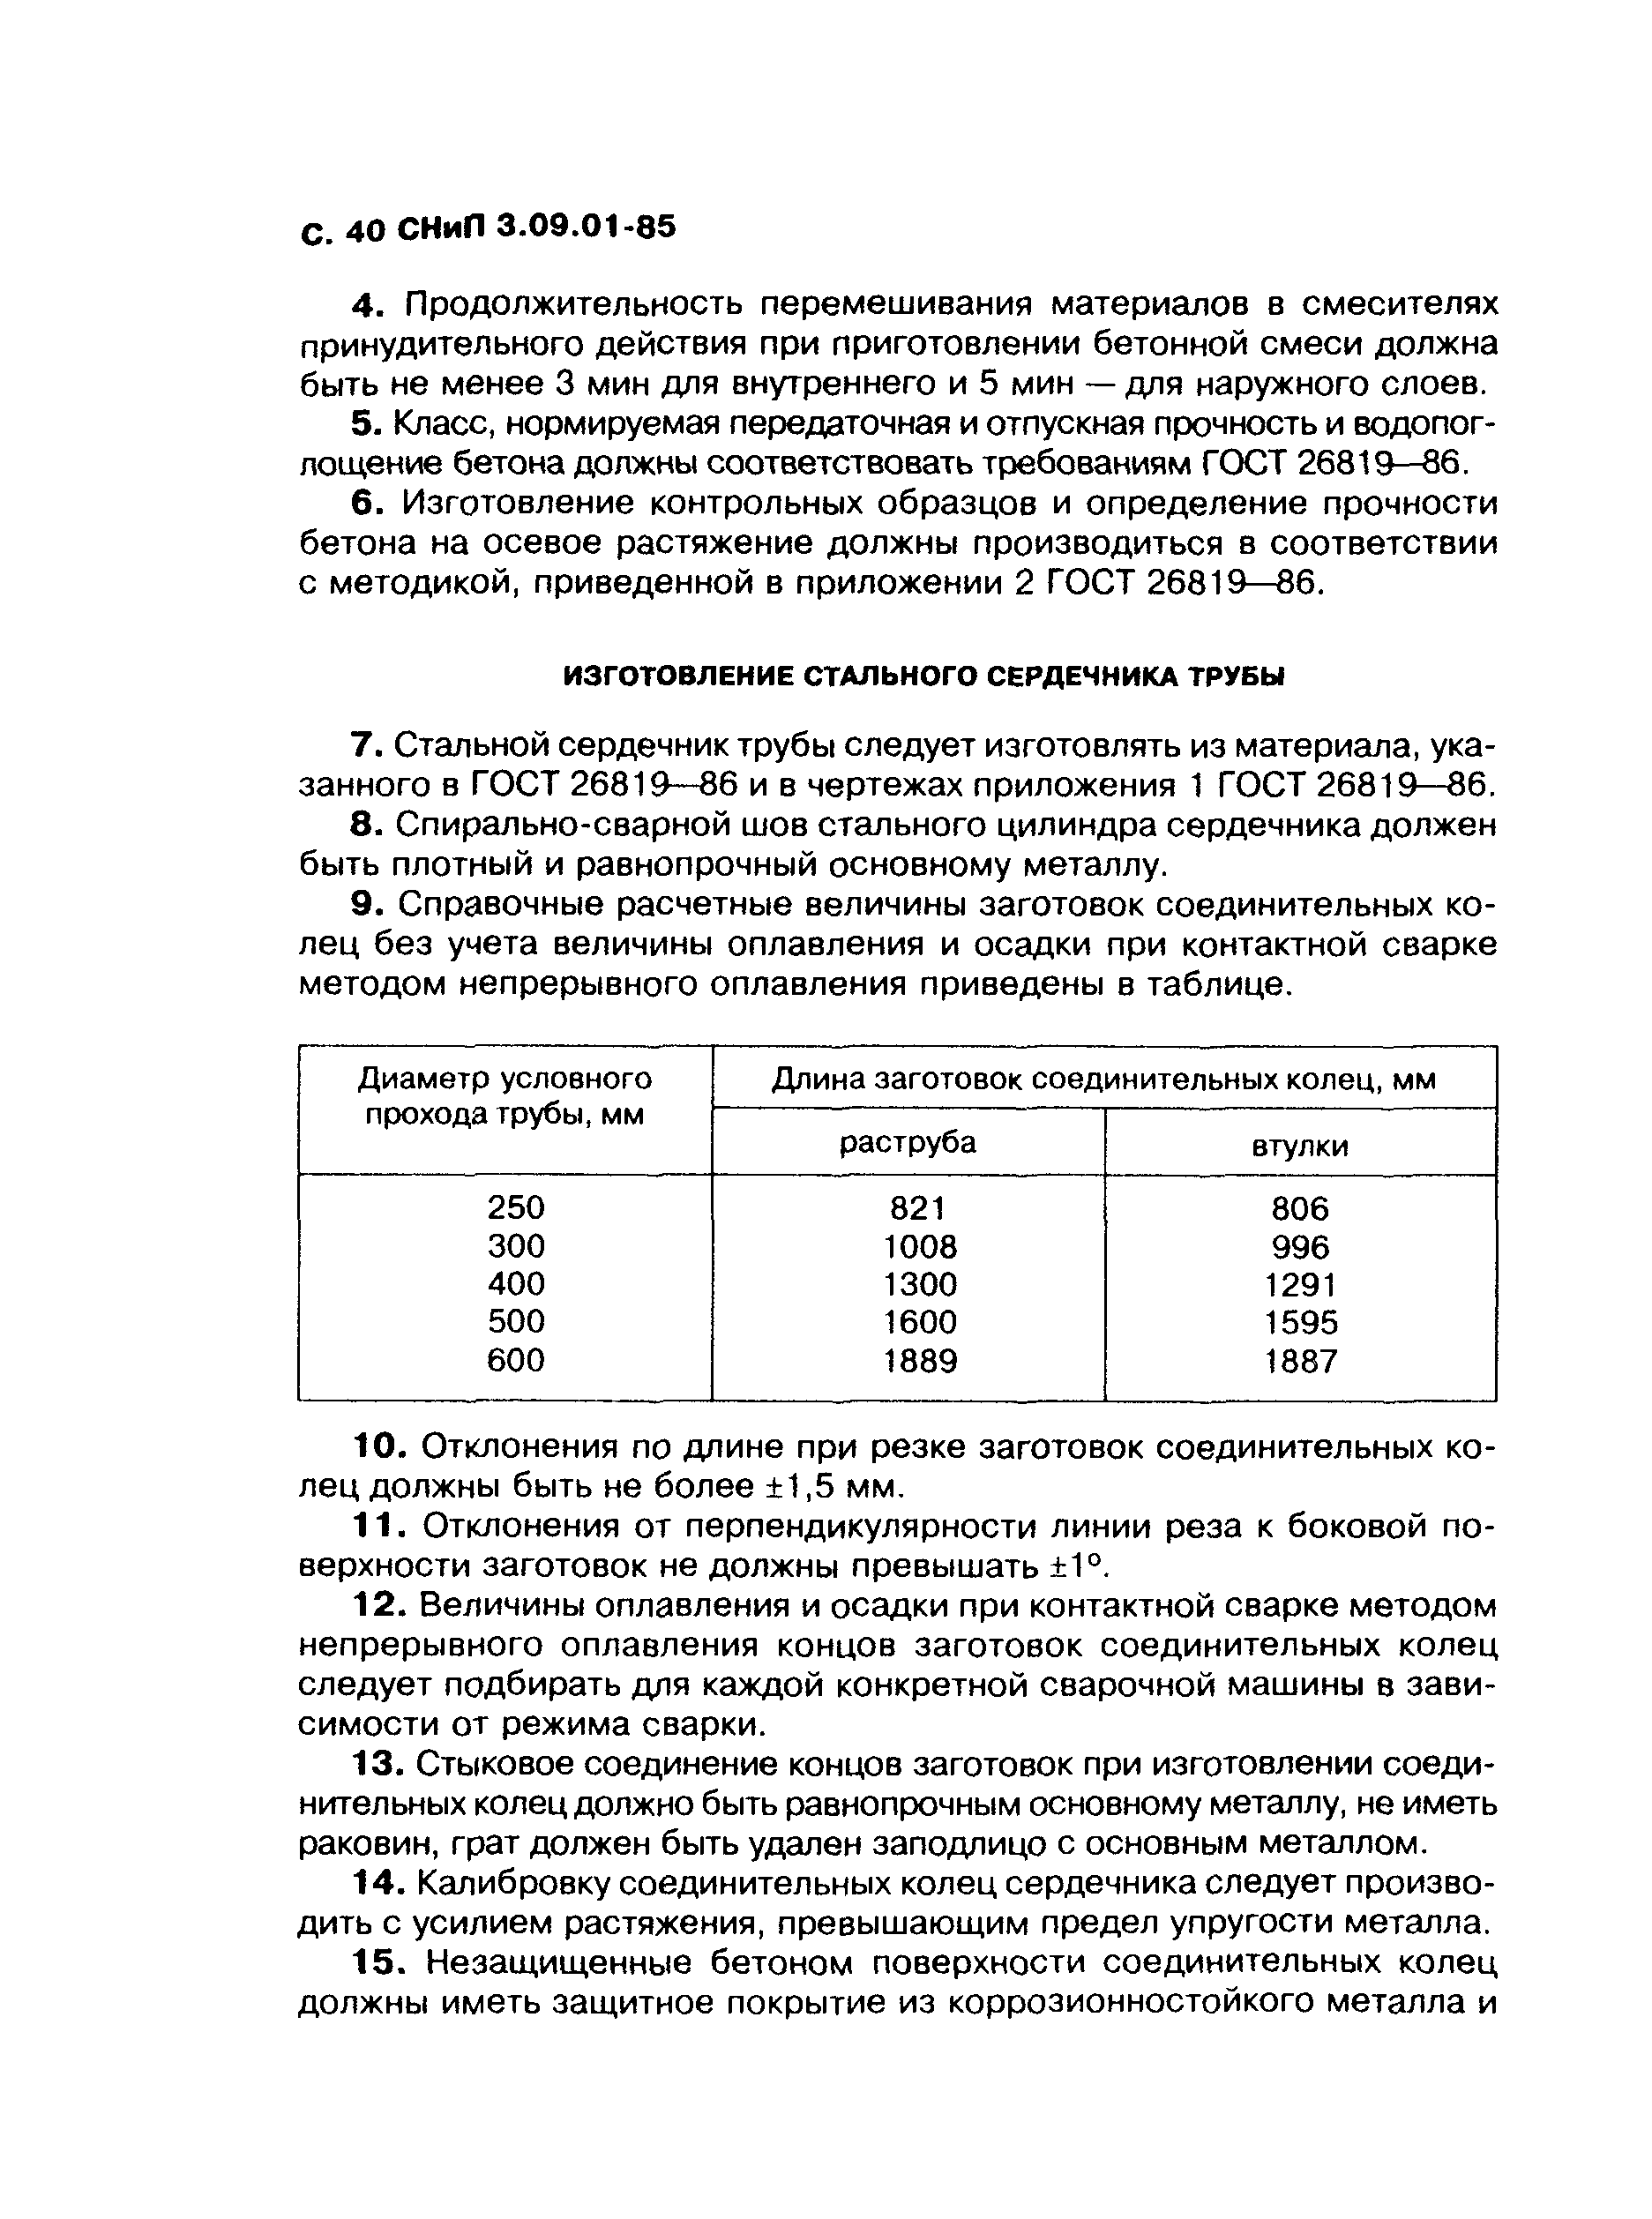 СНиП 3.09.01-85